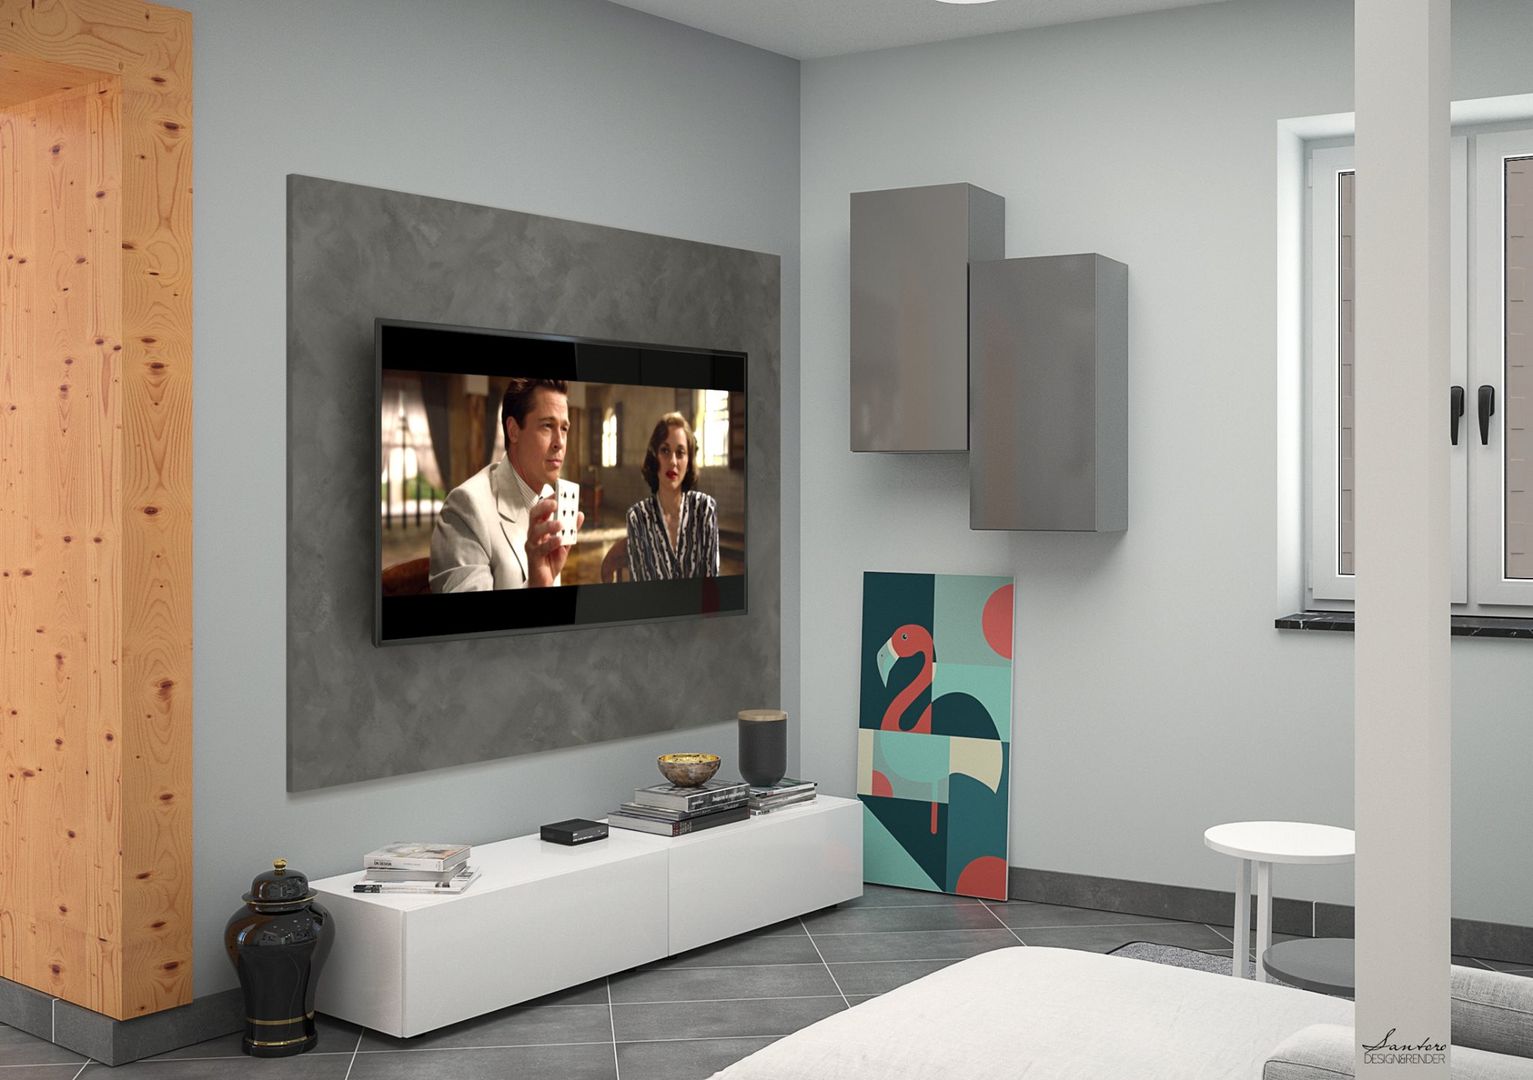 Zone giorno - Design & Render, Santoro Design Render Santoro Design Render Modern Living Room